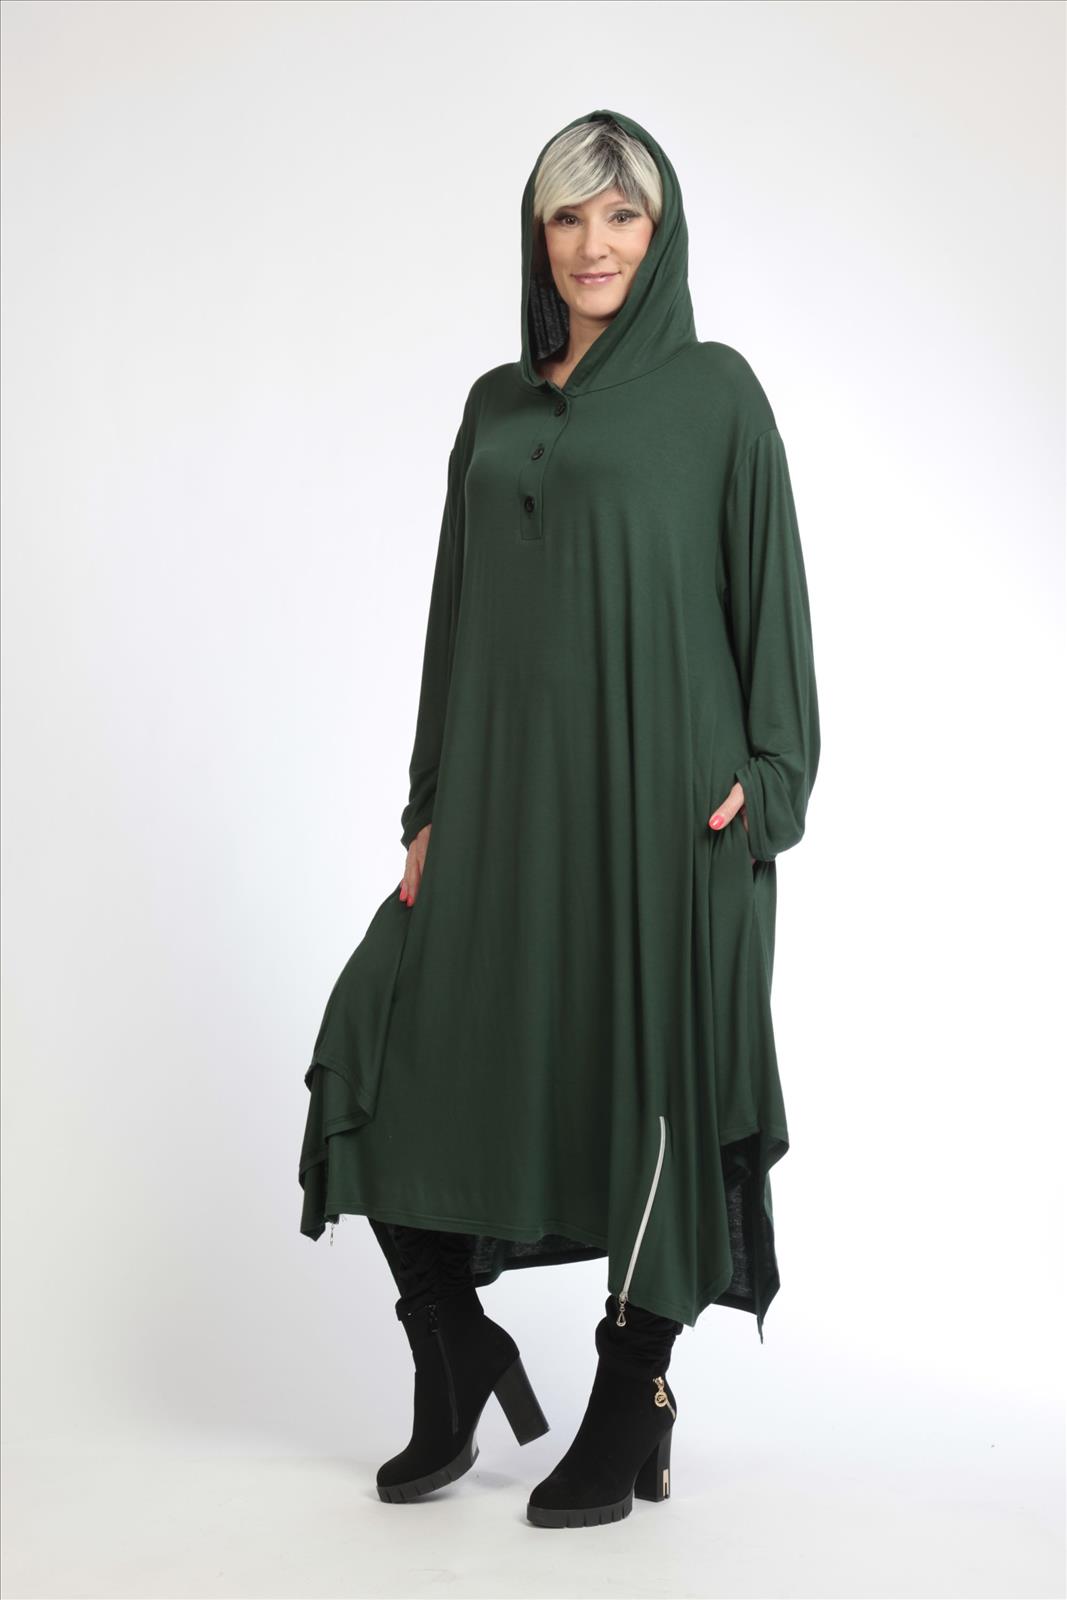 Alltags Kleid in A-Form aus feiner Jersey Qualität, Grün Lagenlook Oversize Mode B2B Großhandel